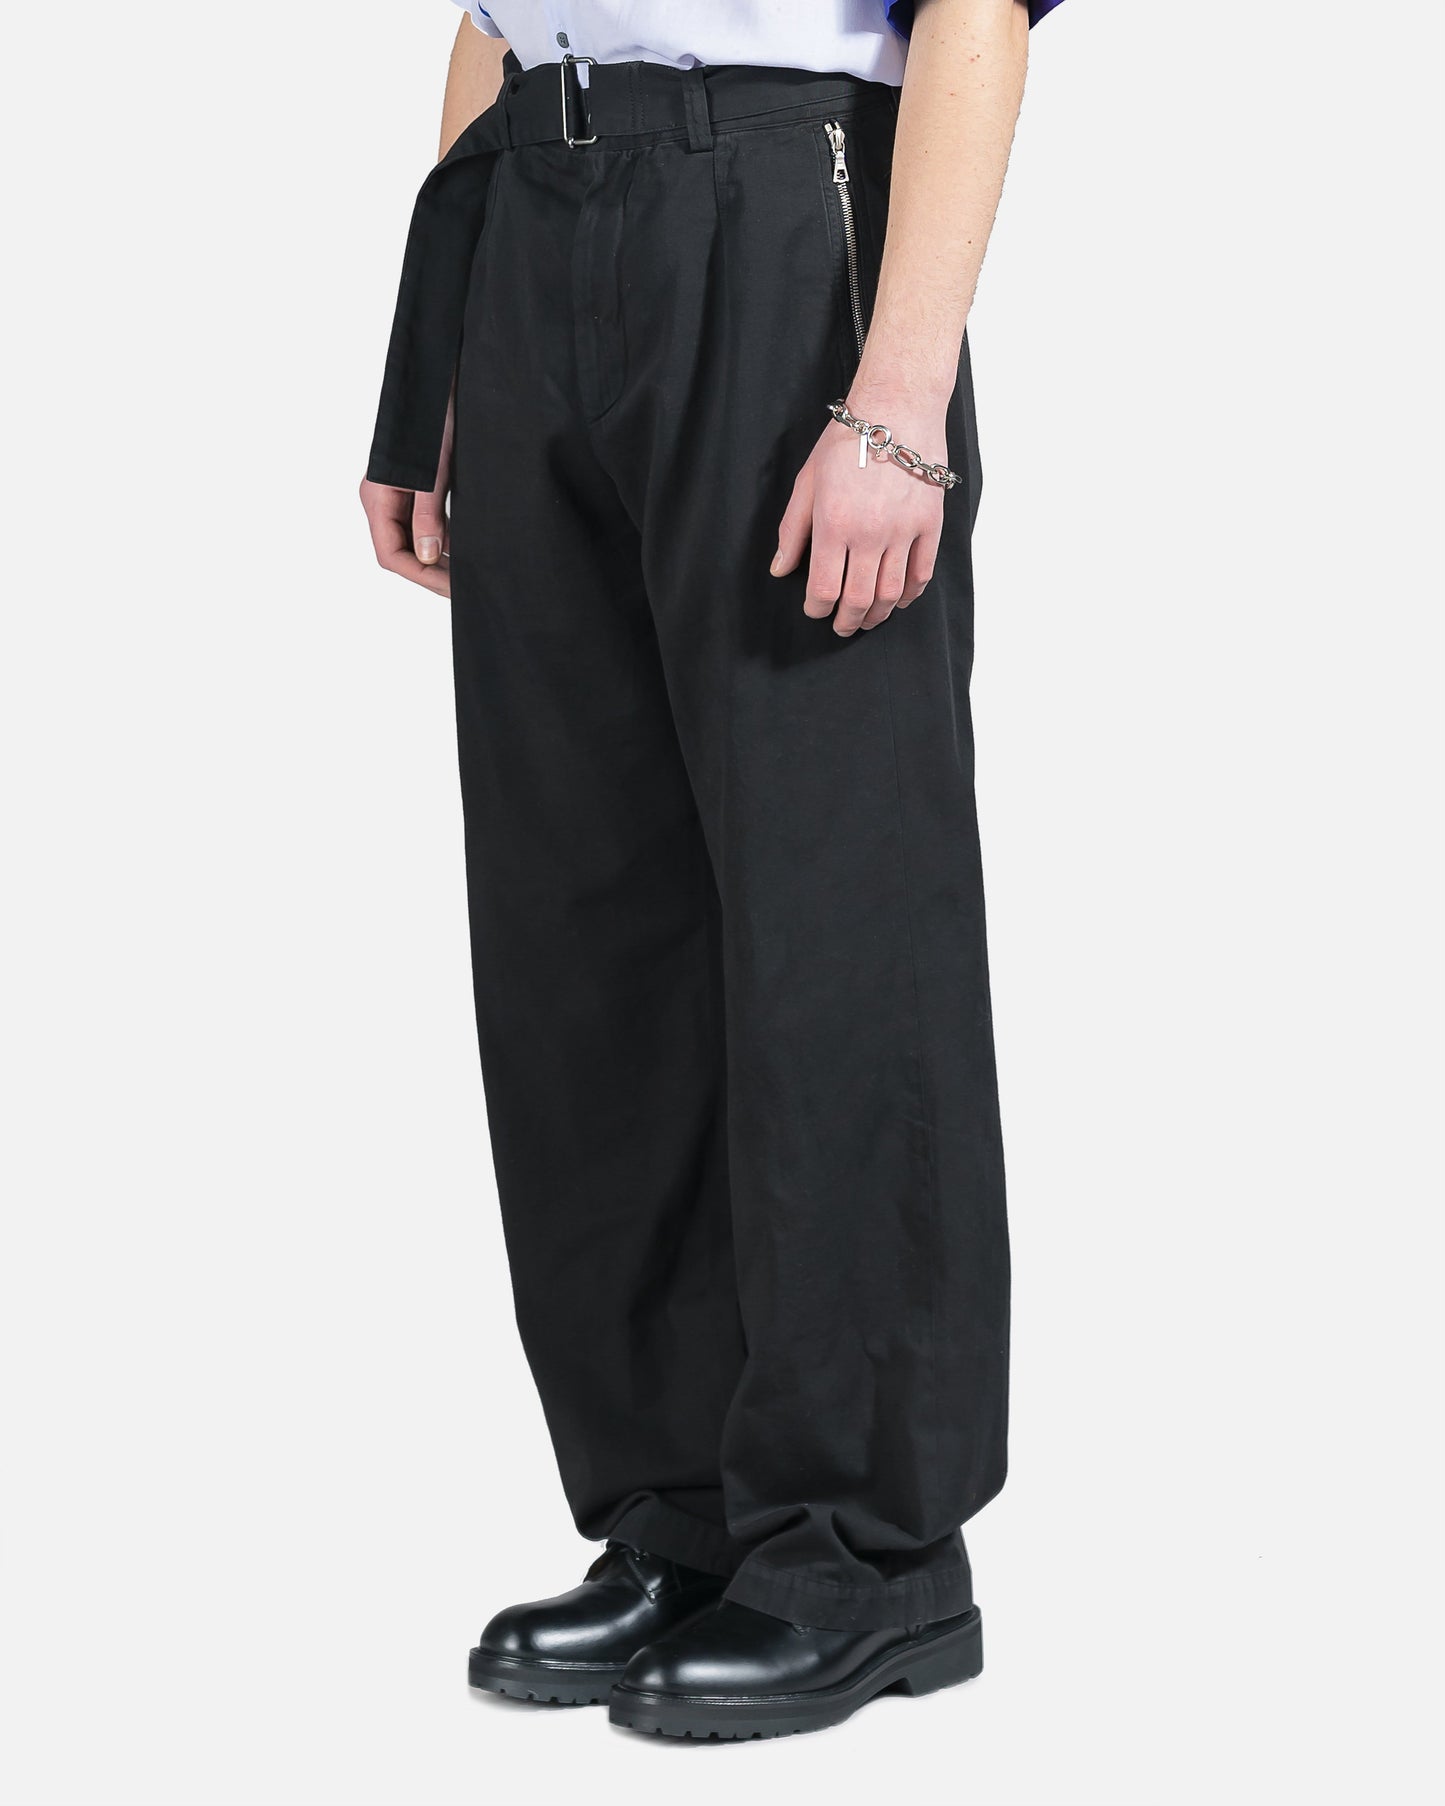 Dries Van Noten Men's Pants Penson Pant in Black